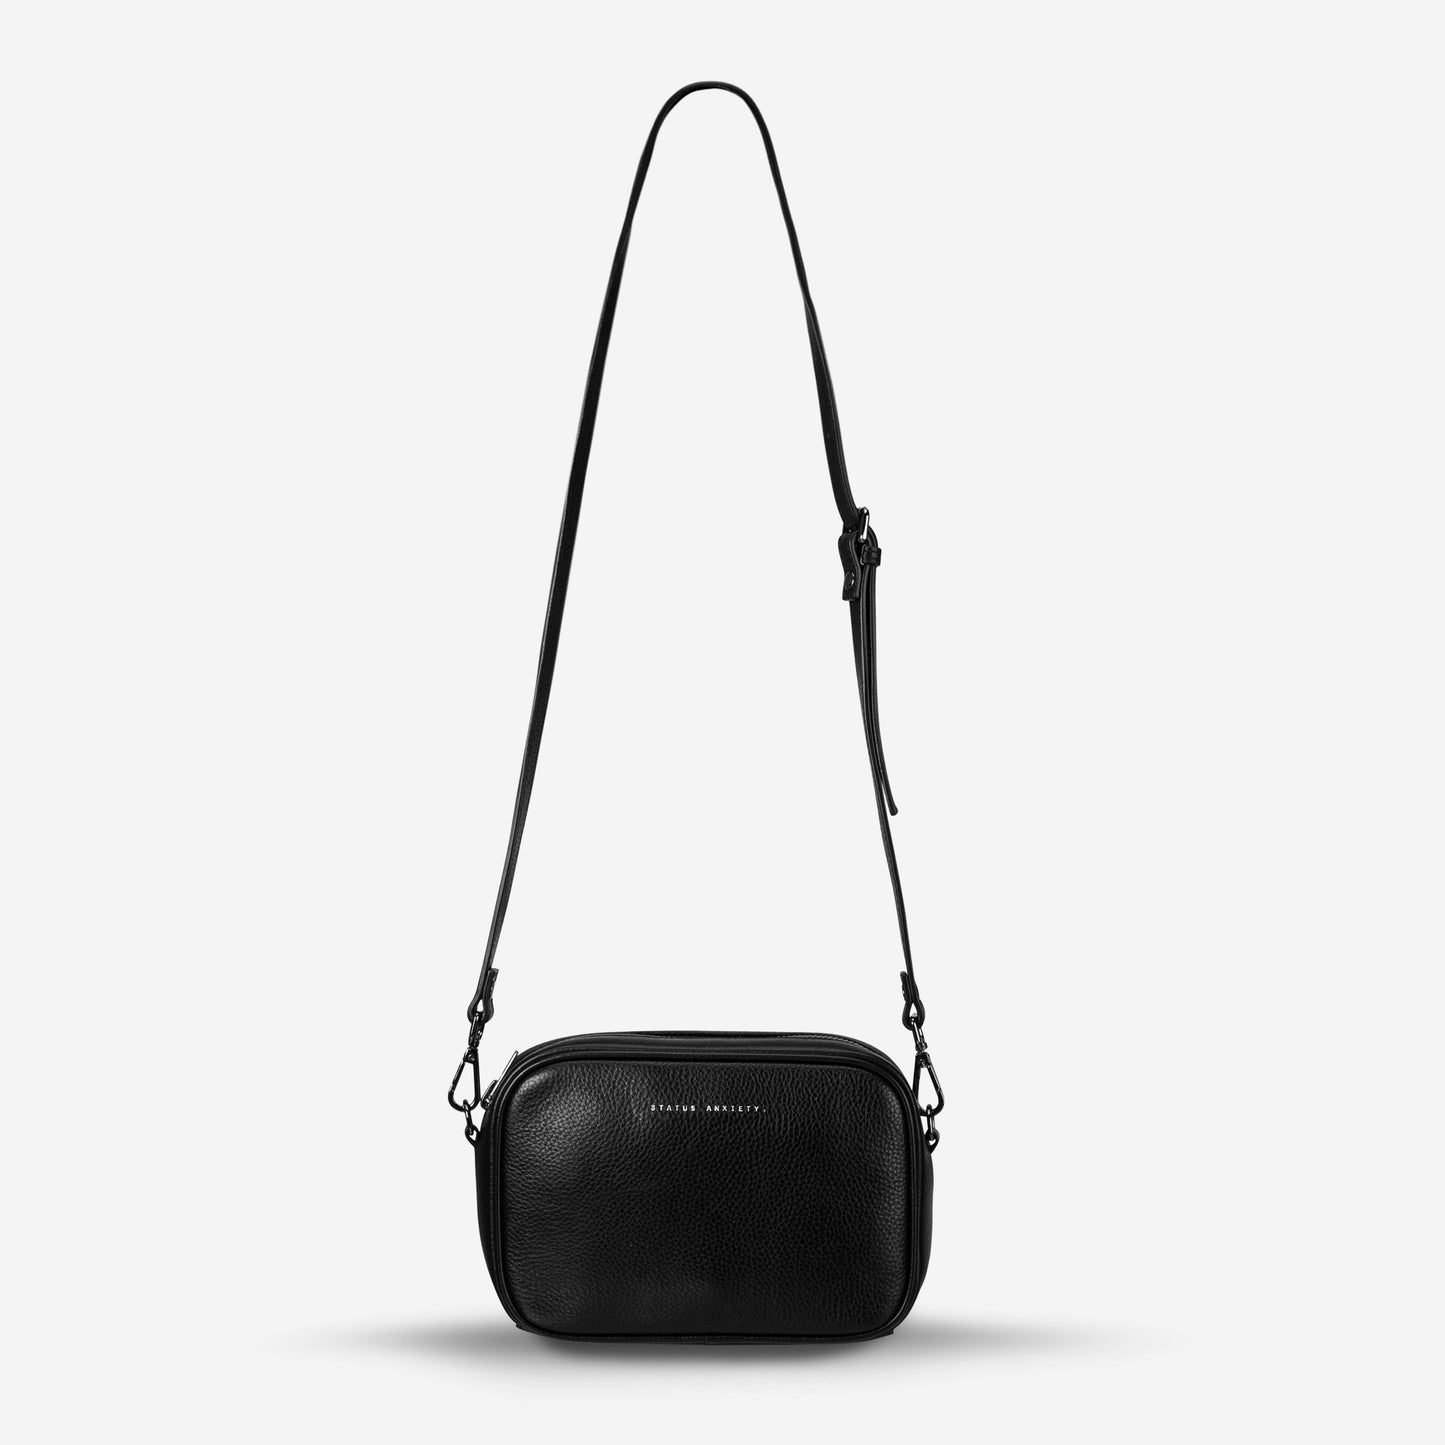 Plunder Leather Bag - Black